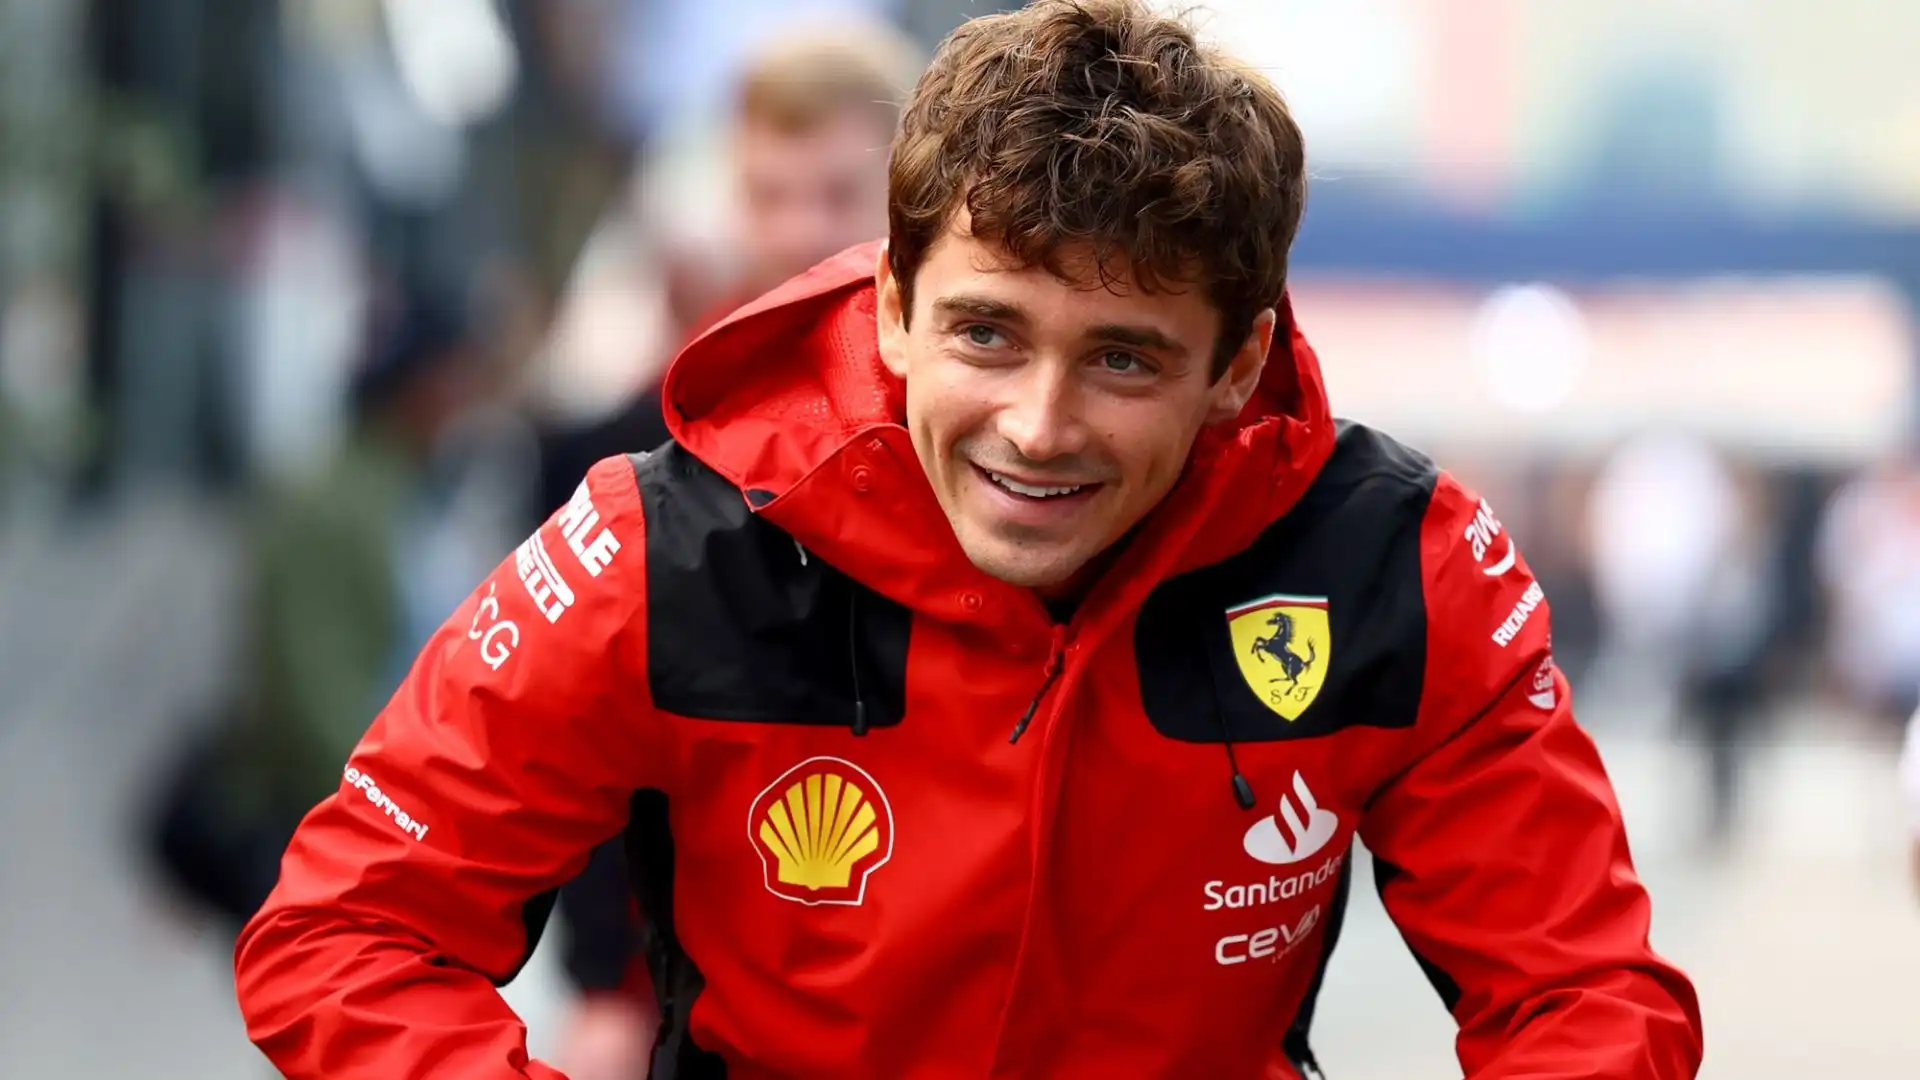 Leclerc si è anche abituato alla forte pressione che deve subire come pilota della Ferrari: "La Ferrari è la Ferrari per un motivo"